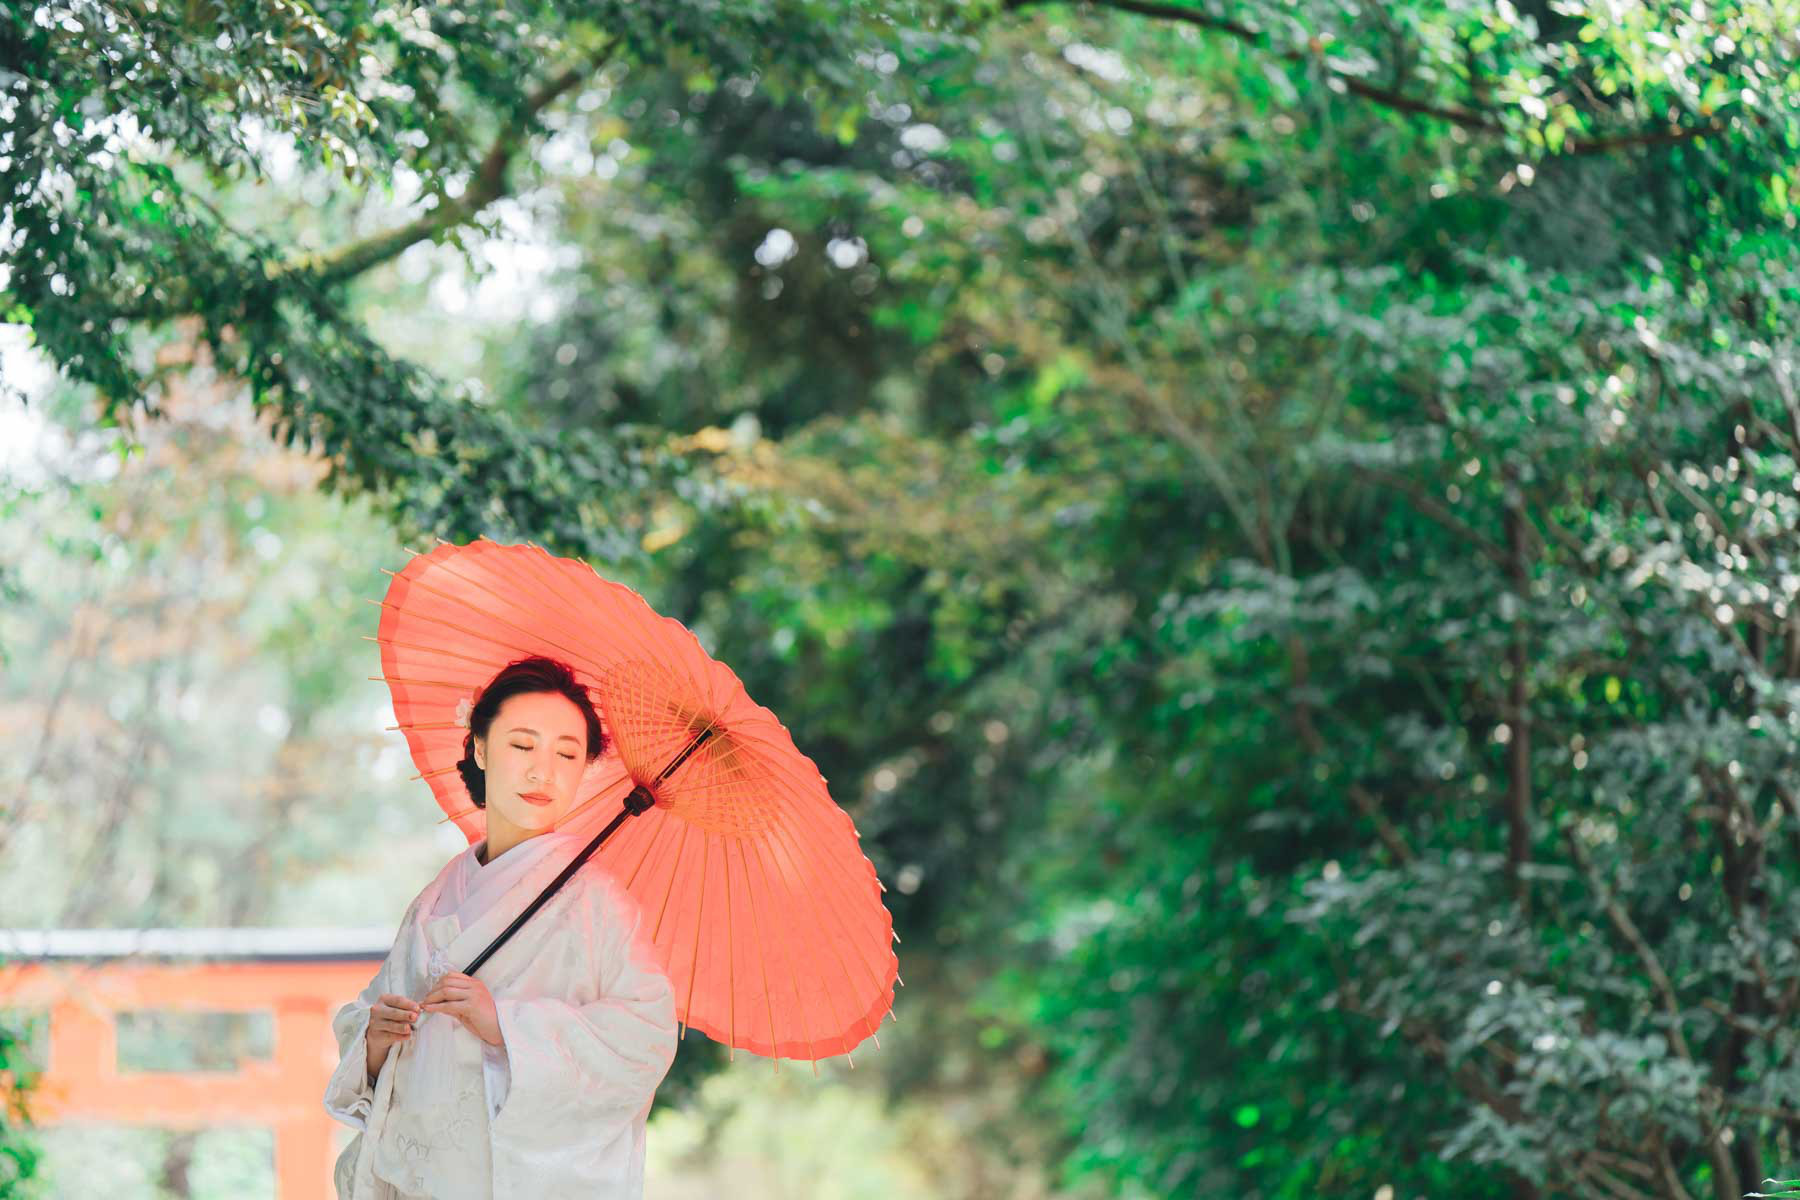 下鴨神社結婚式の写真撮影ギャラリー持ち込みカメラマン